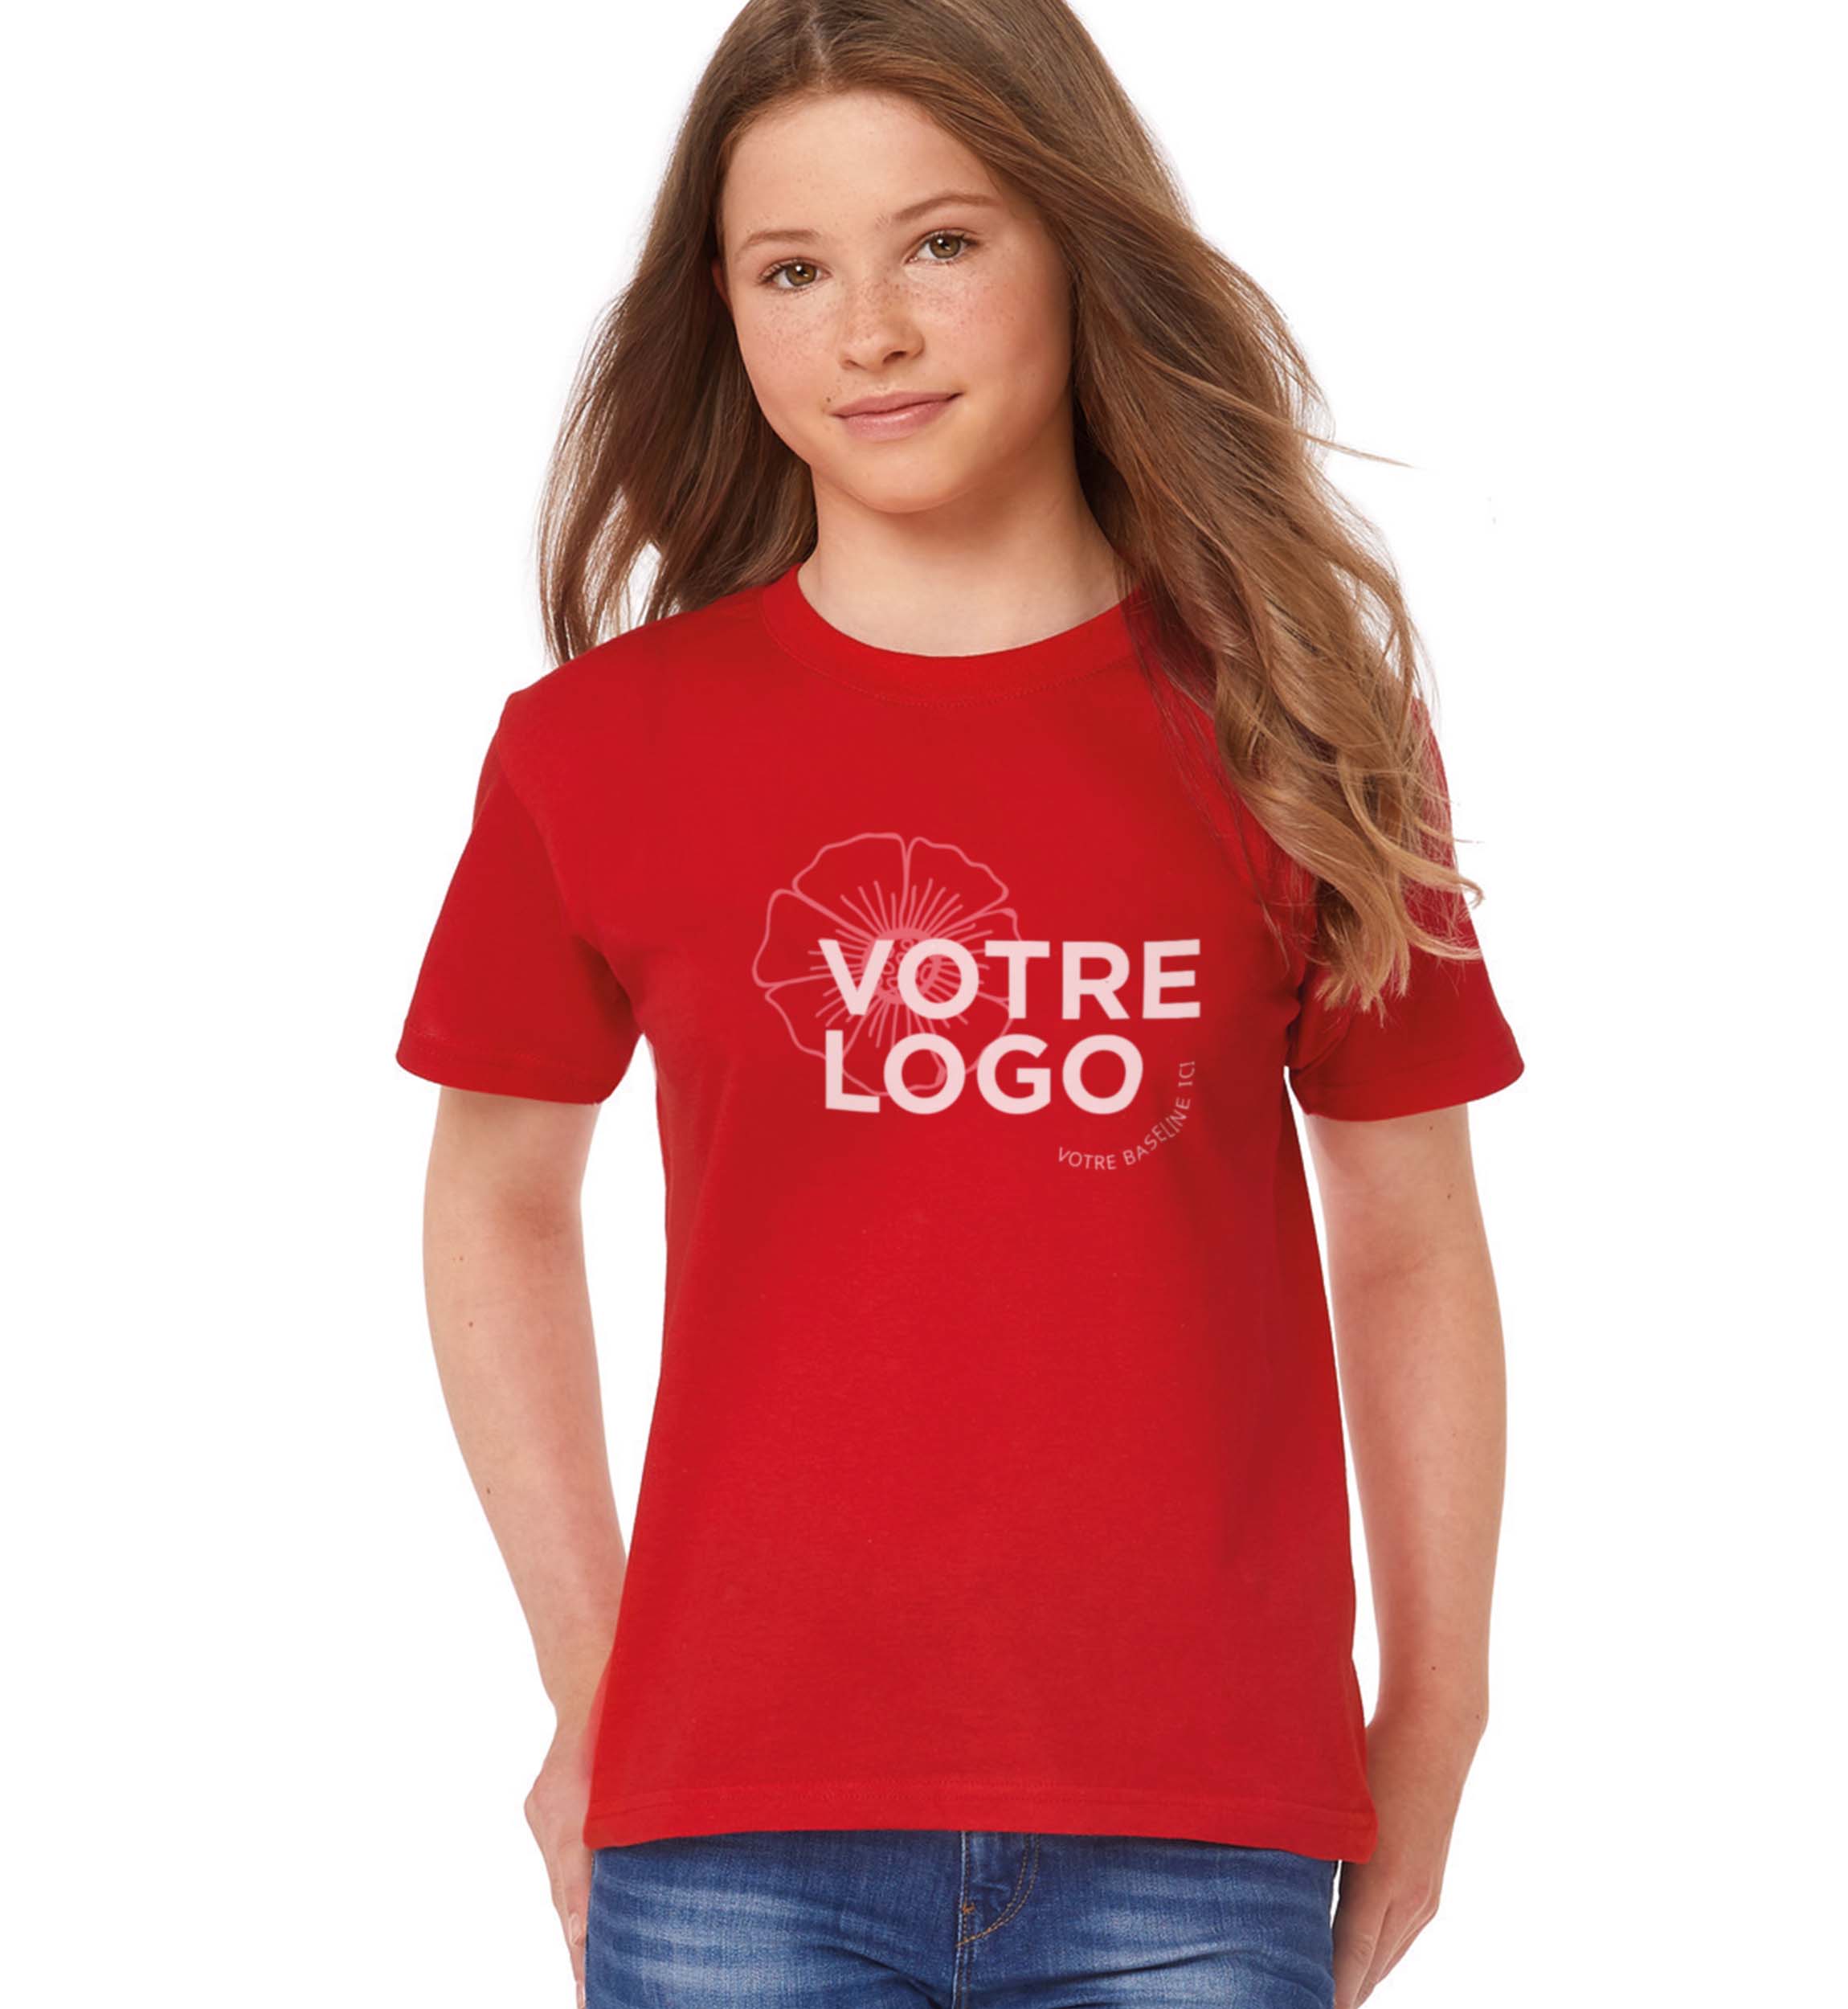 T-shirt Enfant coloris rouge avec exemple d'image imprimé dessus